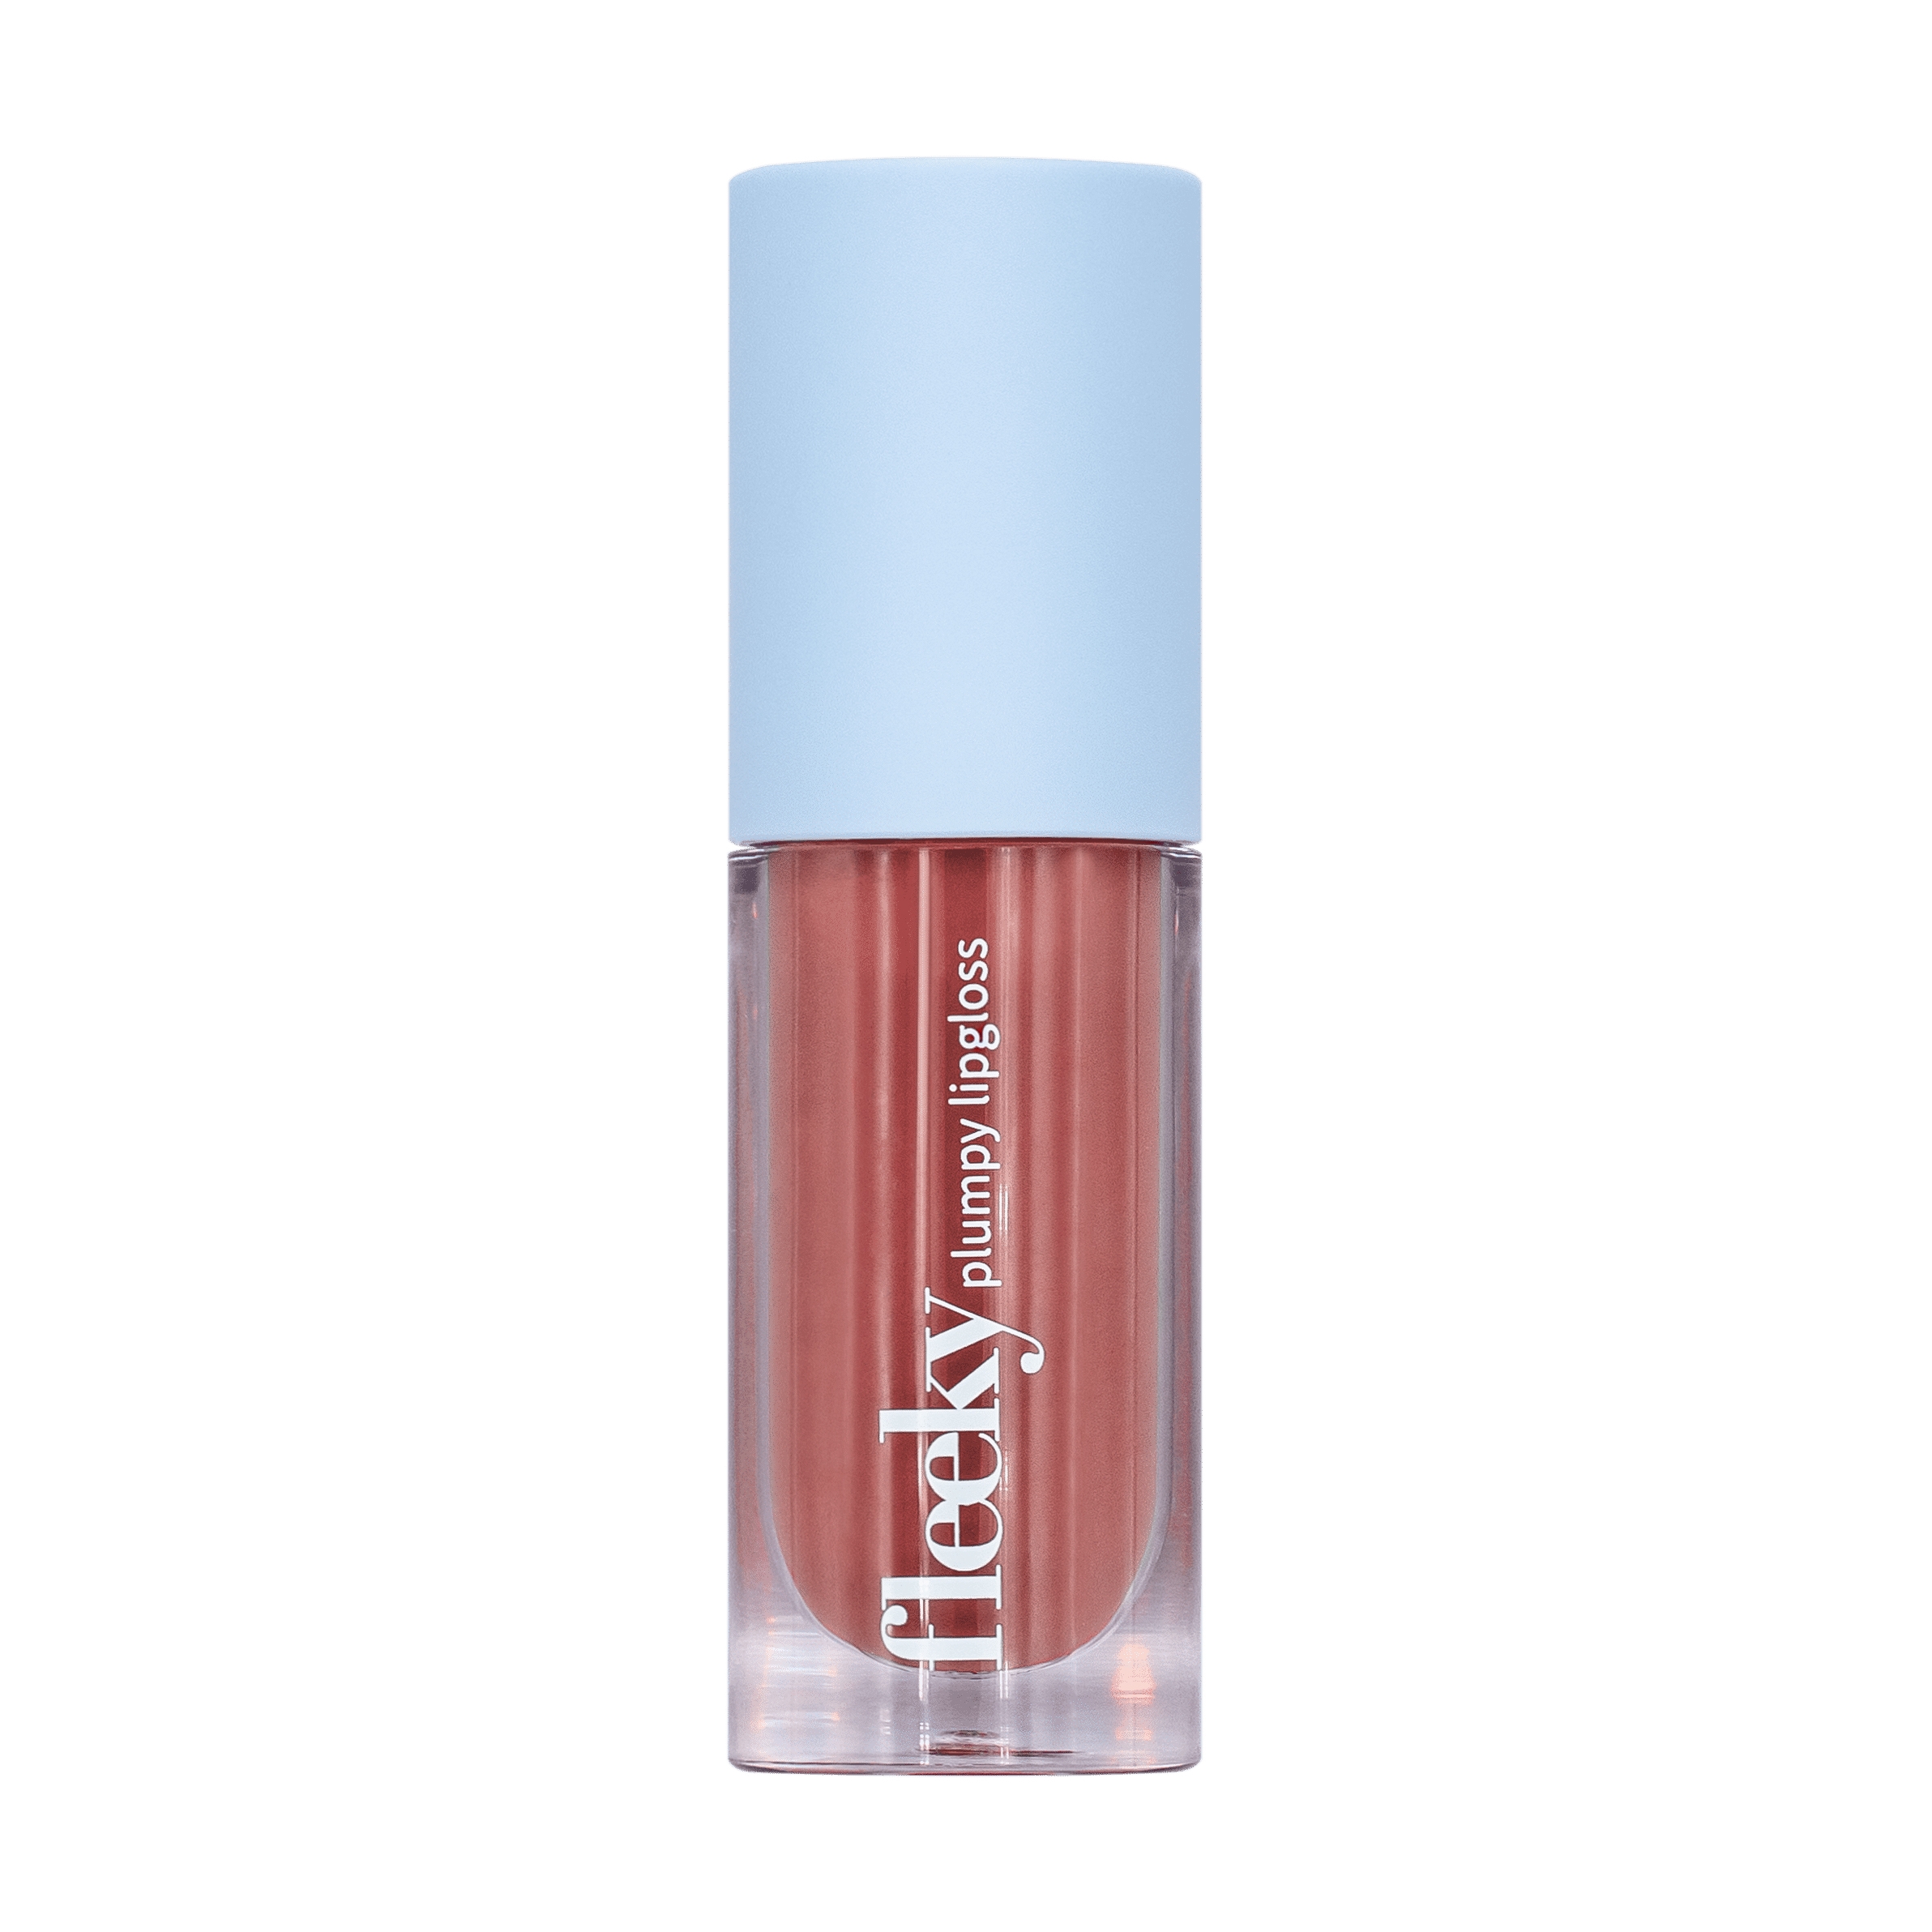 Produktbild von fleeky Lips - Plumpy Lip Gloss Rose Nude